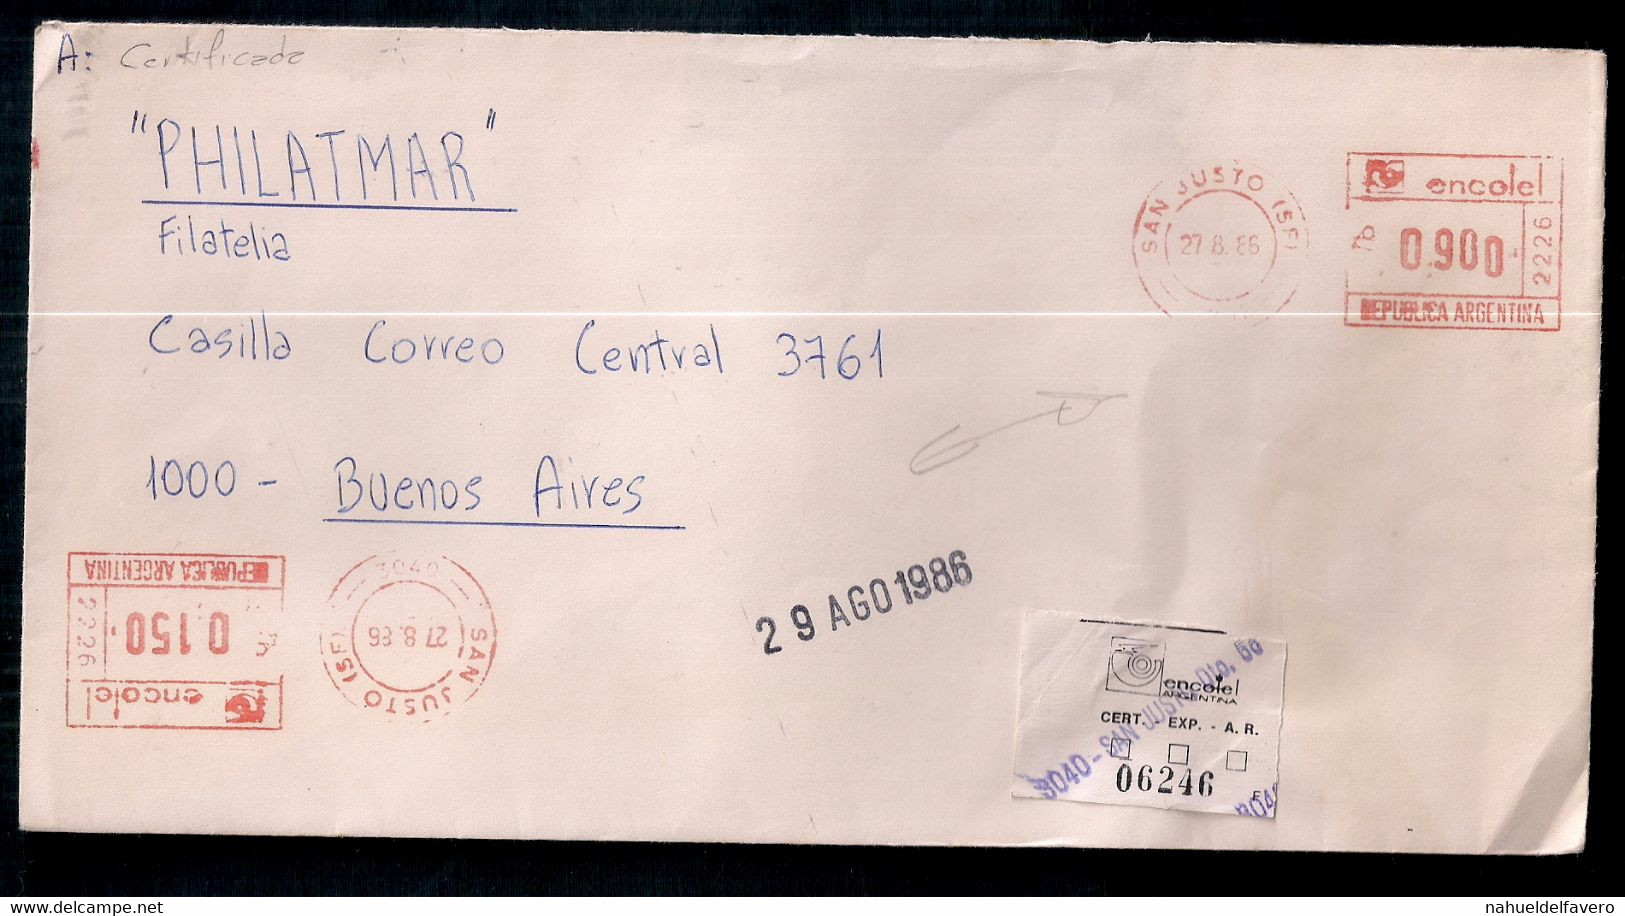 Argentina - Enveloppe Timbrée Moderne - Lettres & Documents